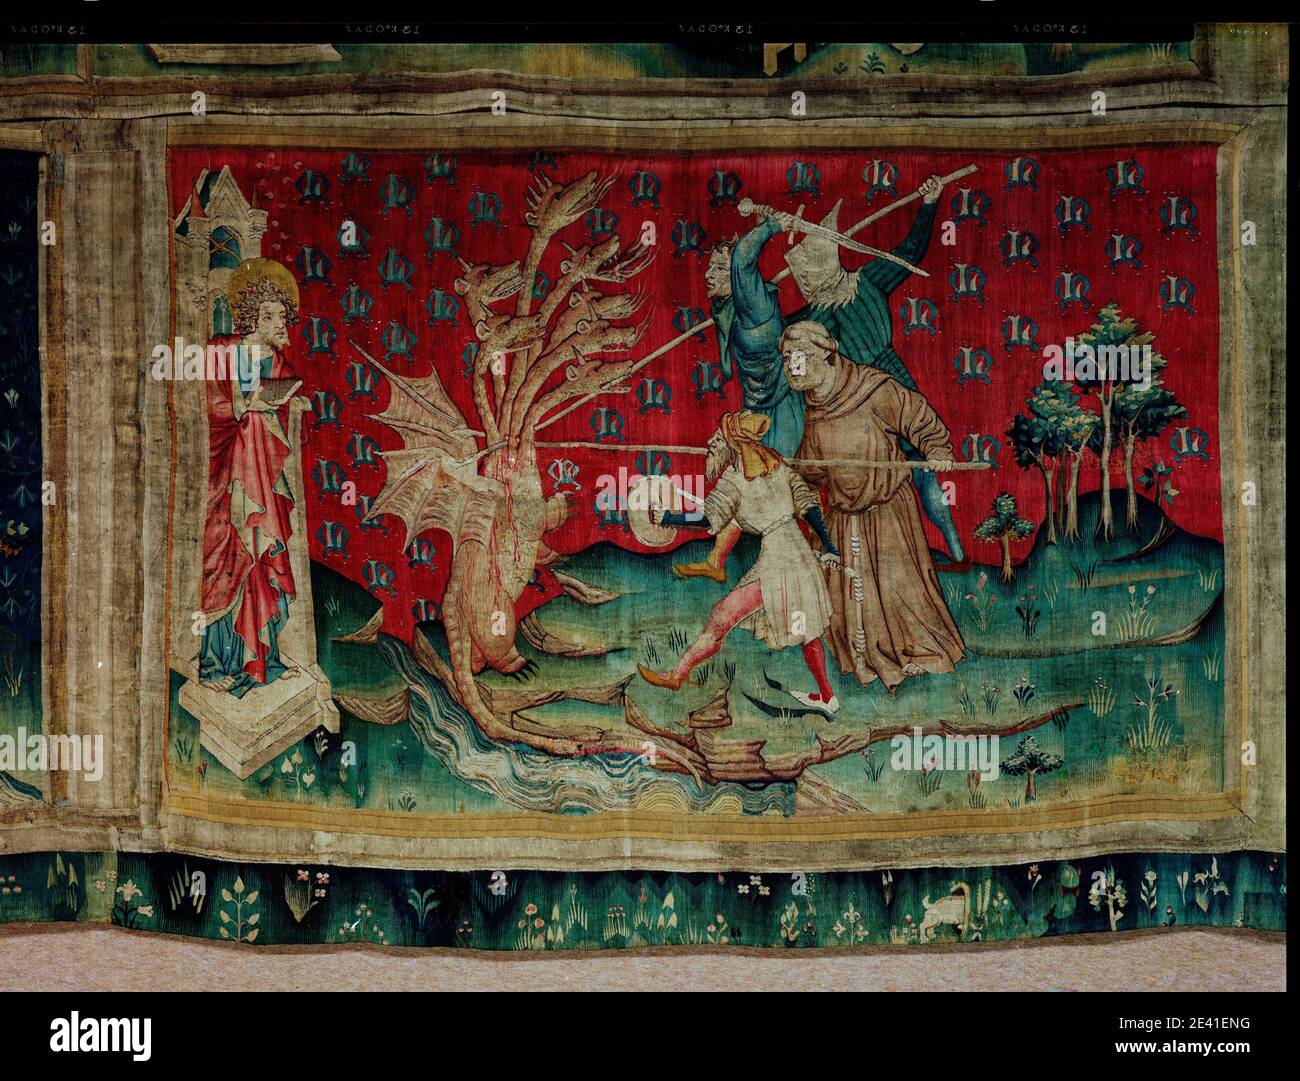 La aventure de l'Apocalypse d'Angers, le Dragon combat les serviteurs de Dieu (1,54 x 2,36 m), der Drachen kämpft gegen die Diener Gottes Banque D'Images